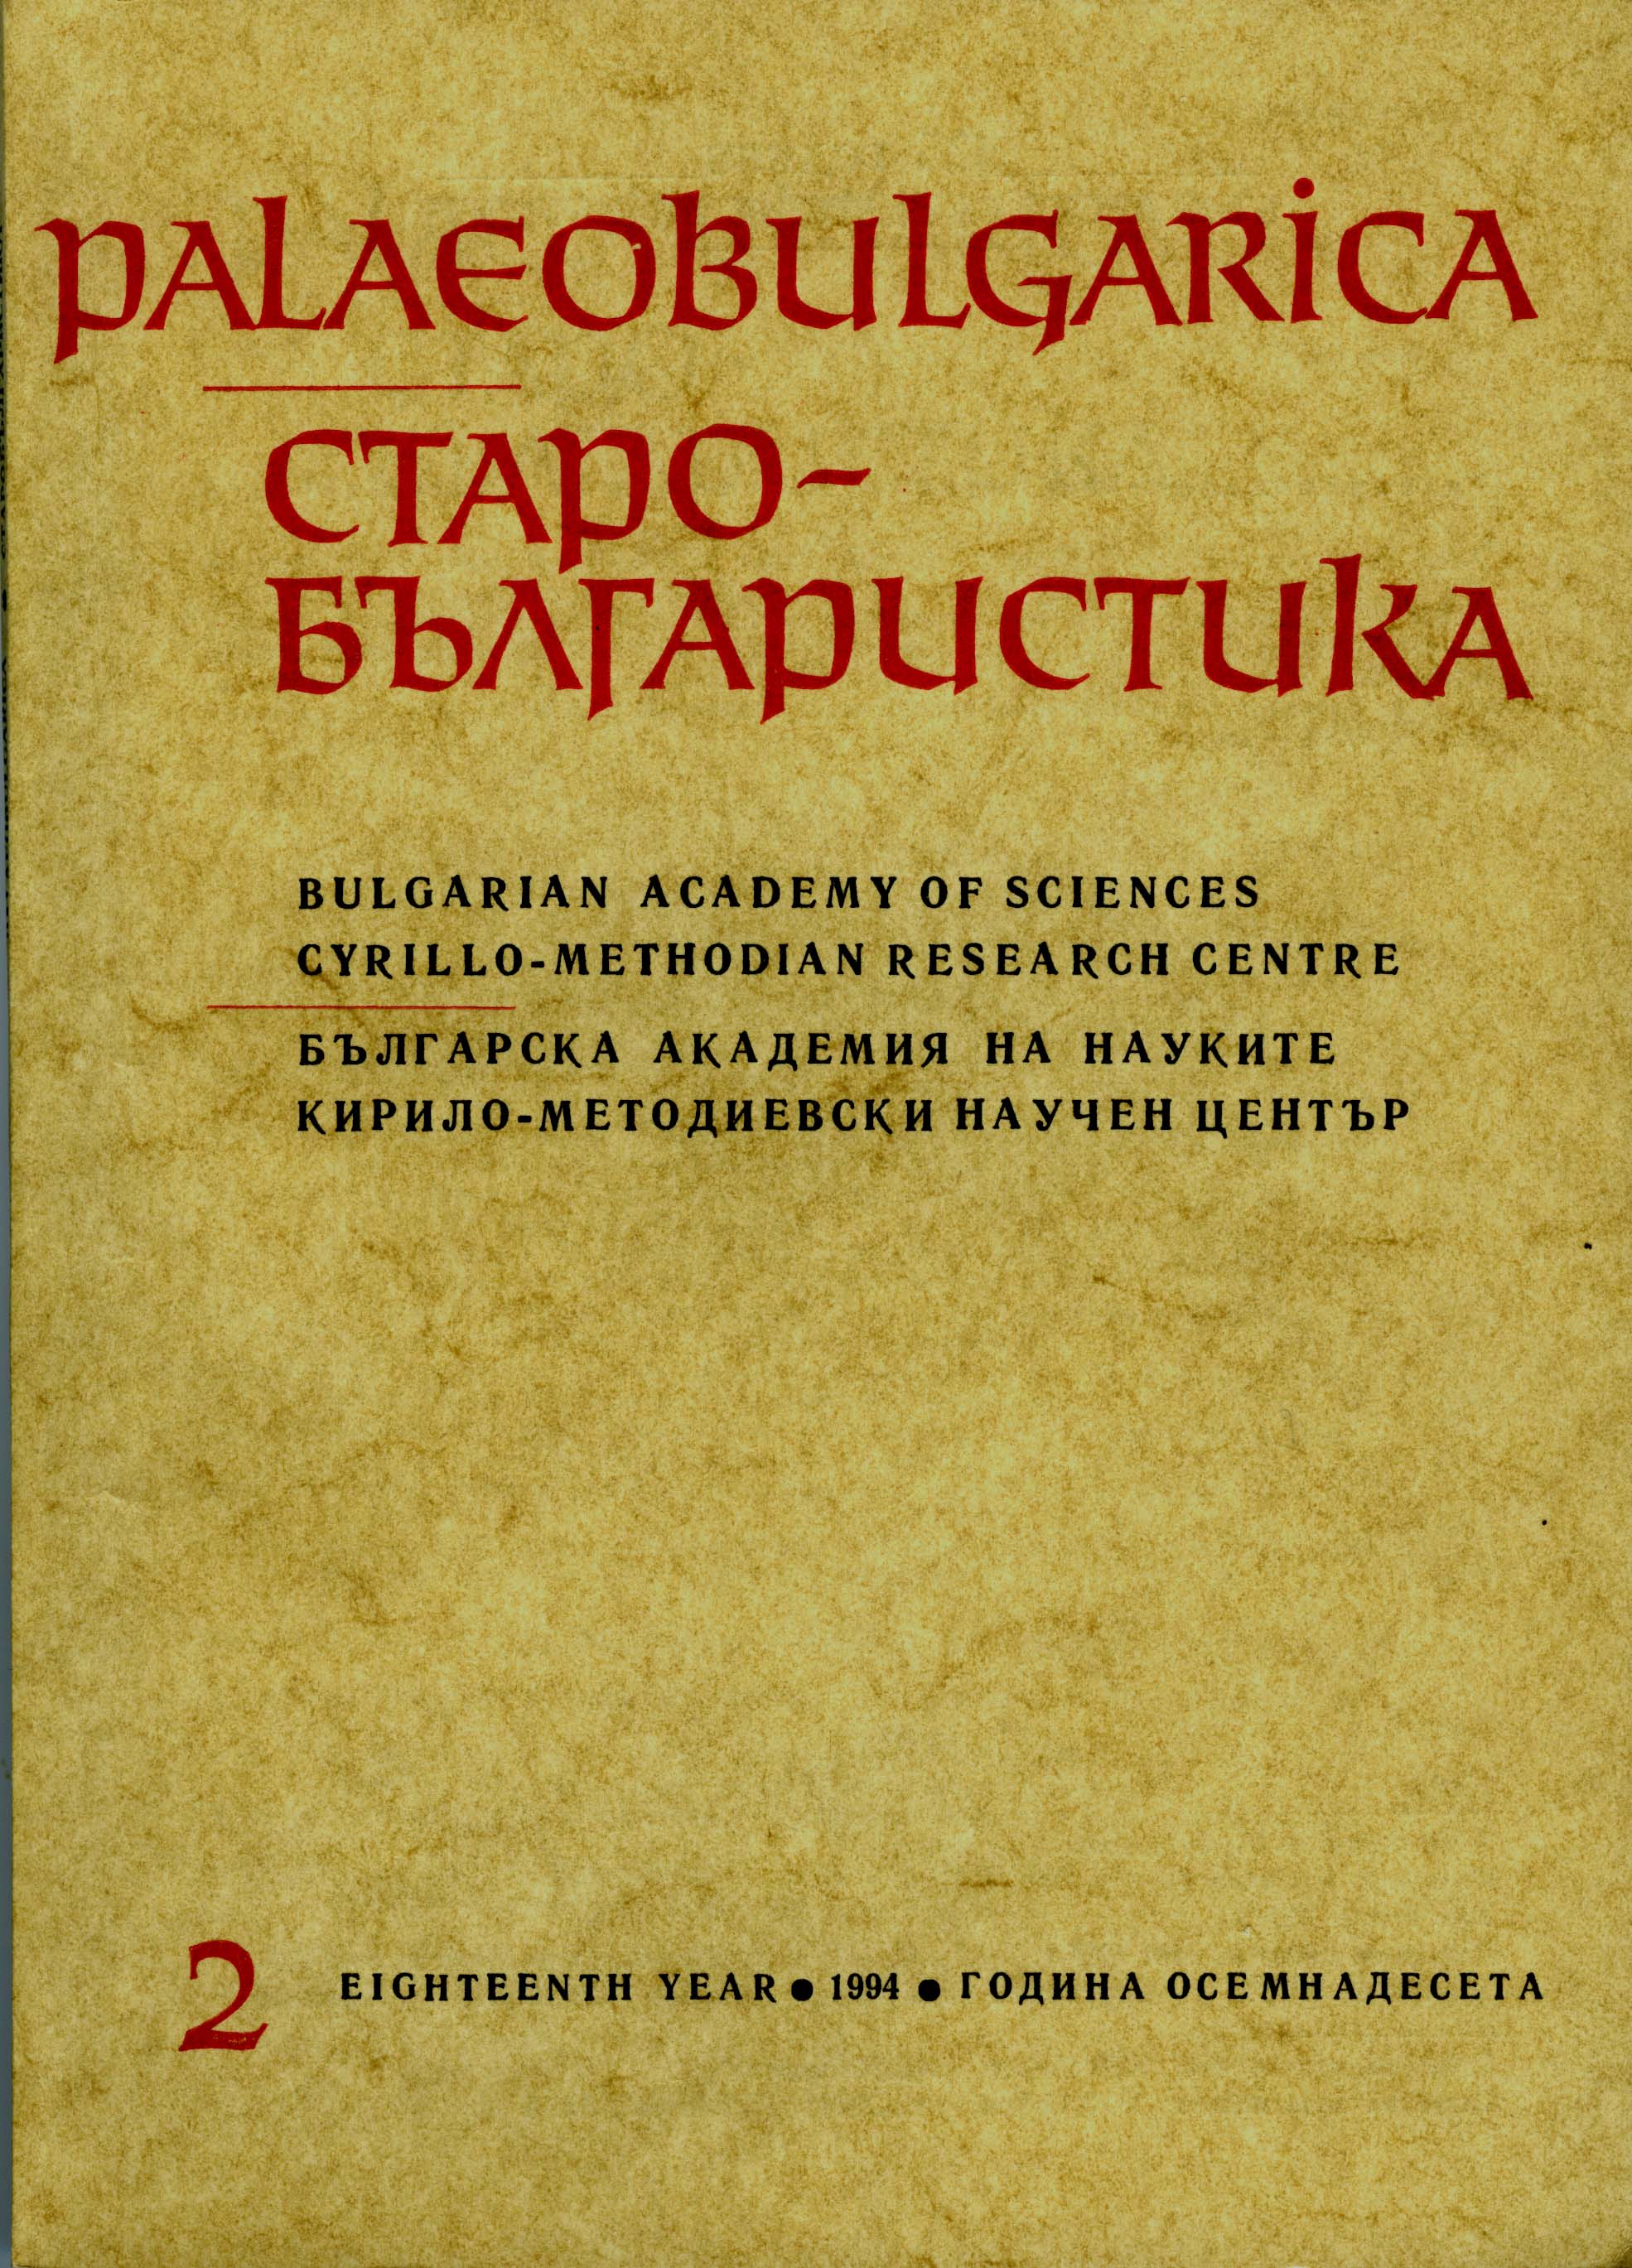 Тълкуванията на старозаветни и новозаветни книги в средновековната българска култура